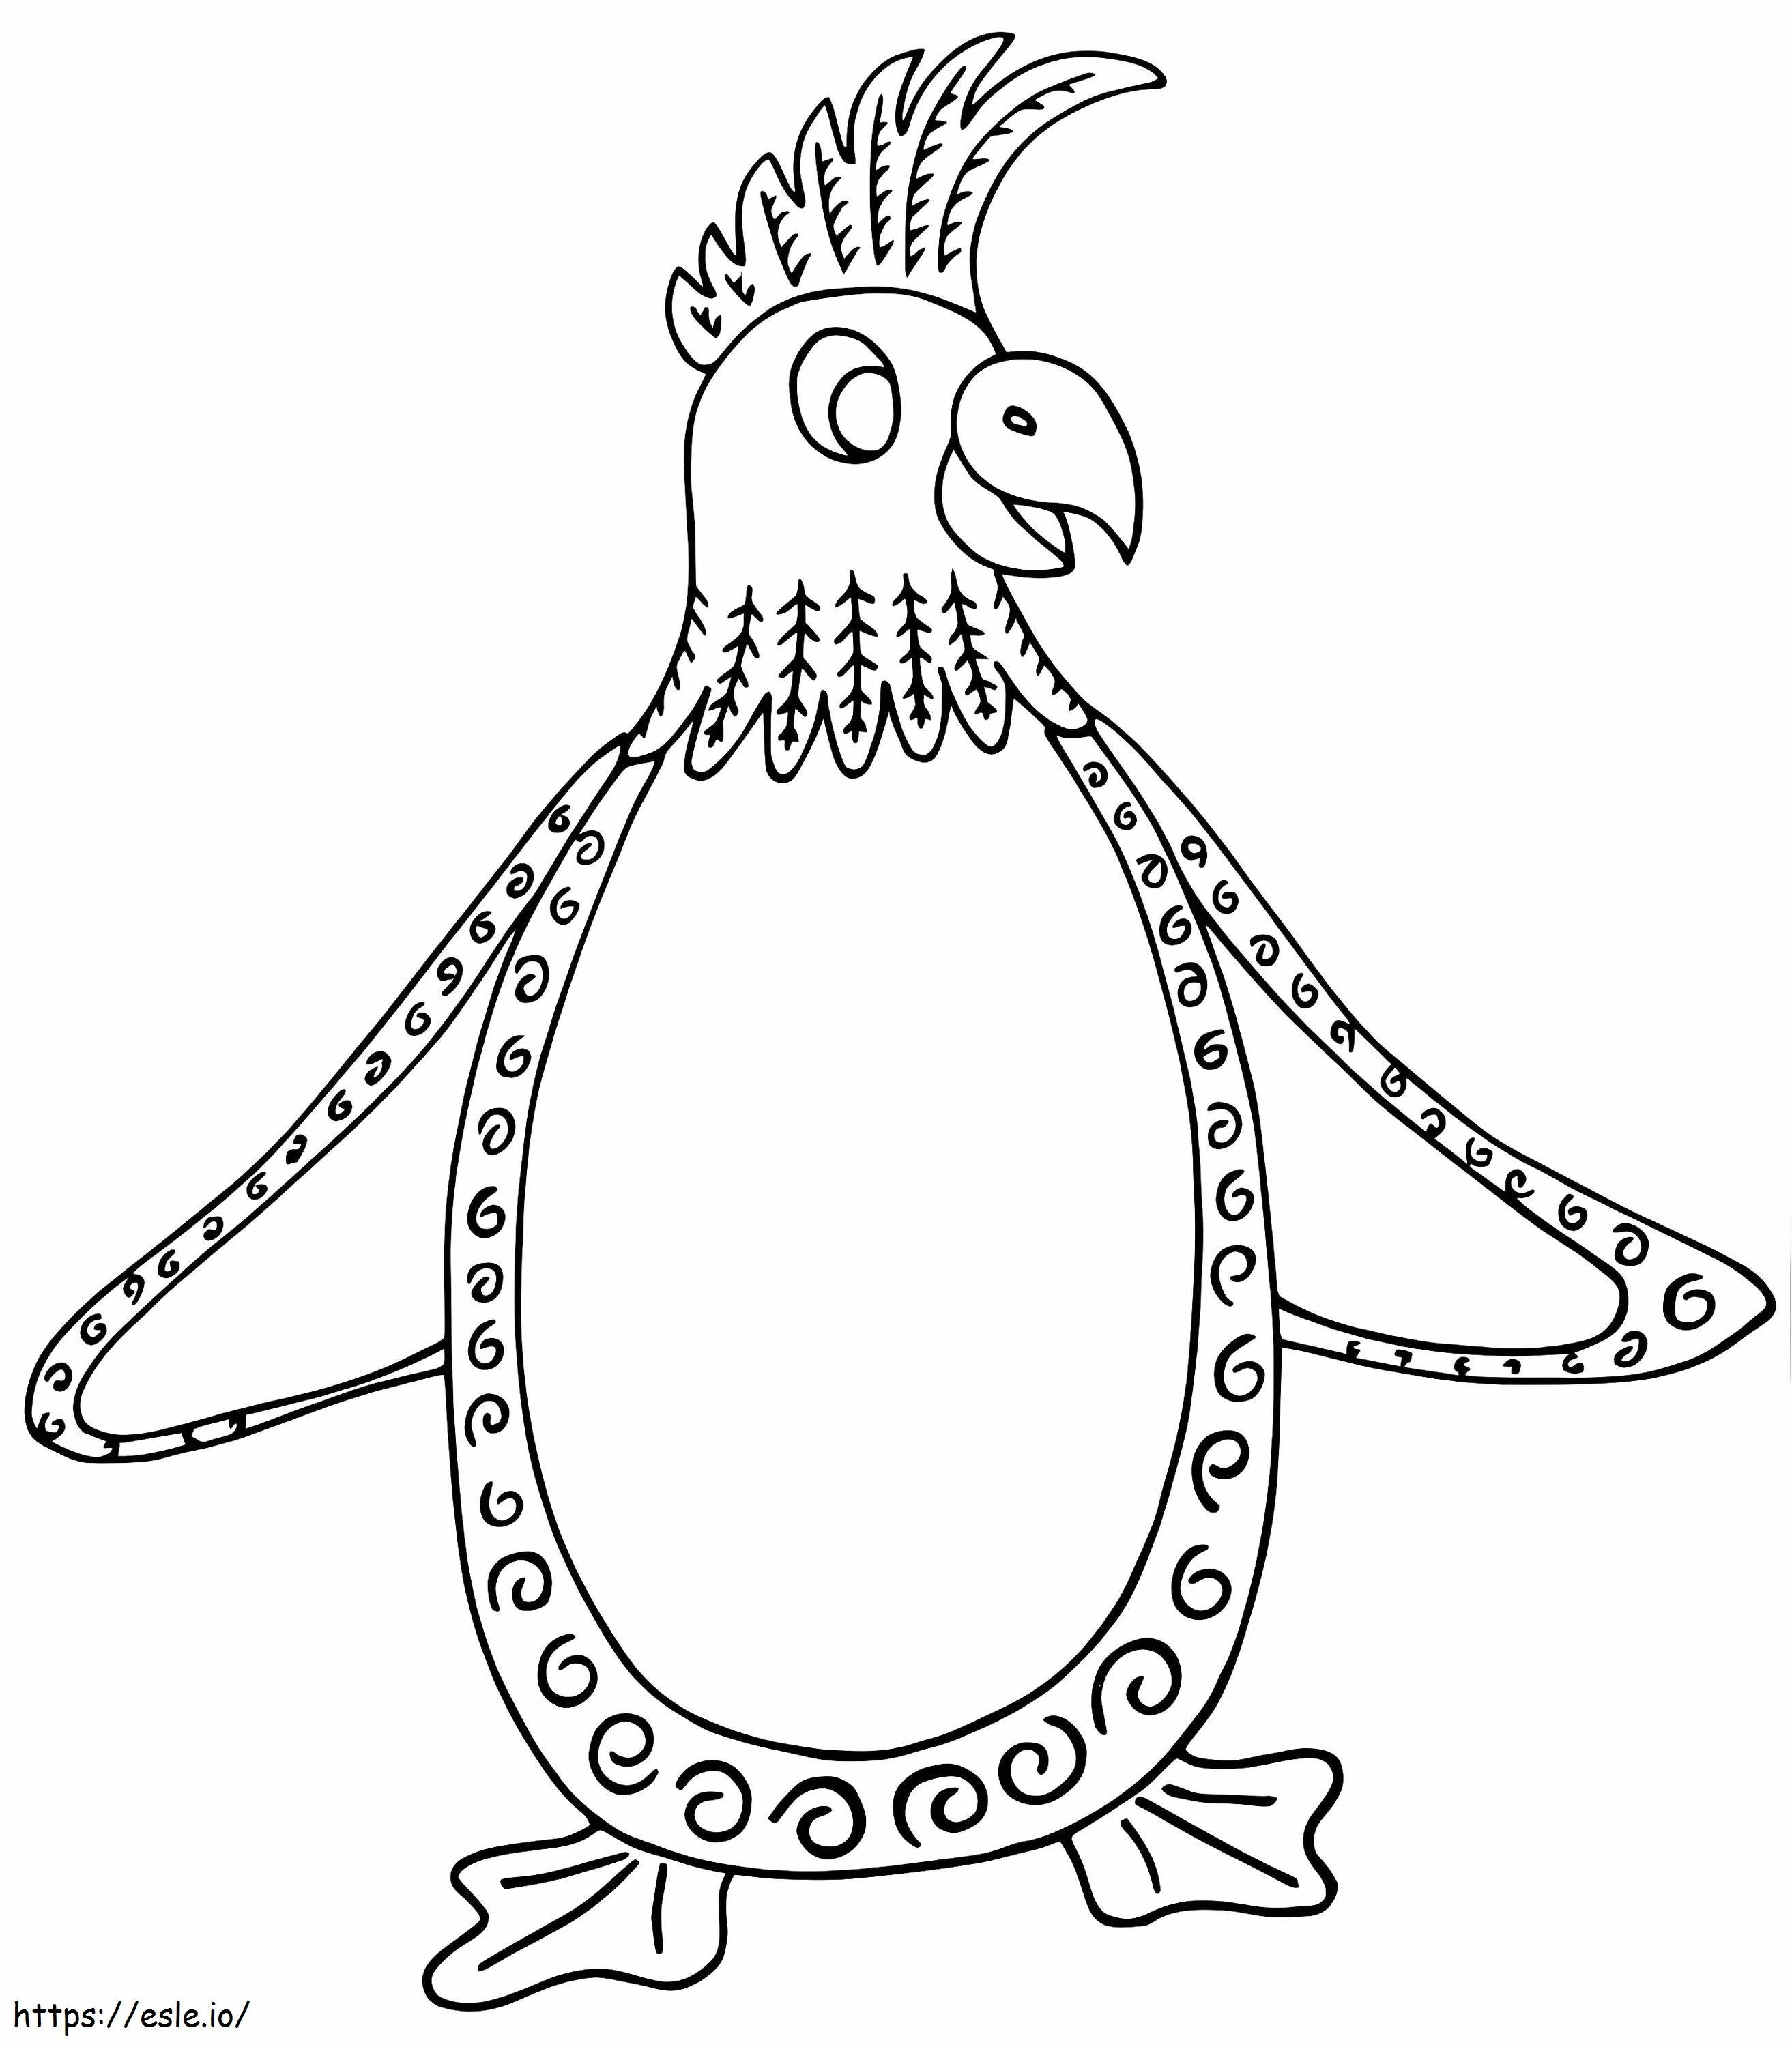 Pinguino Alebrijes da colorare